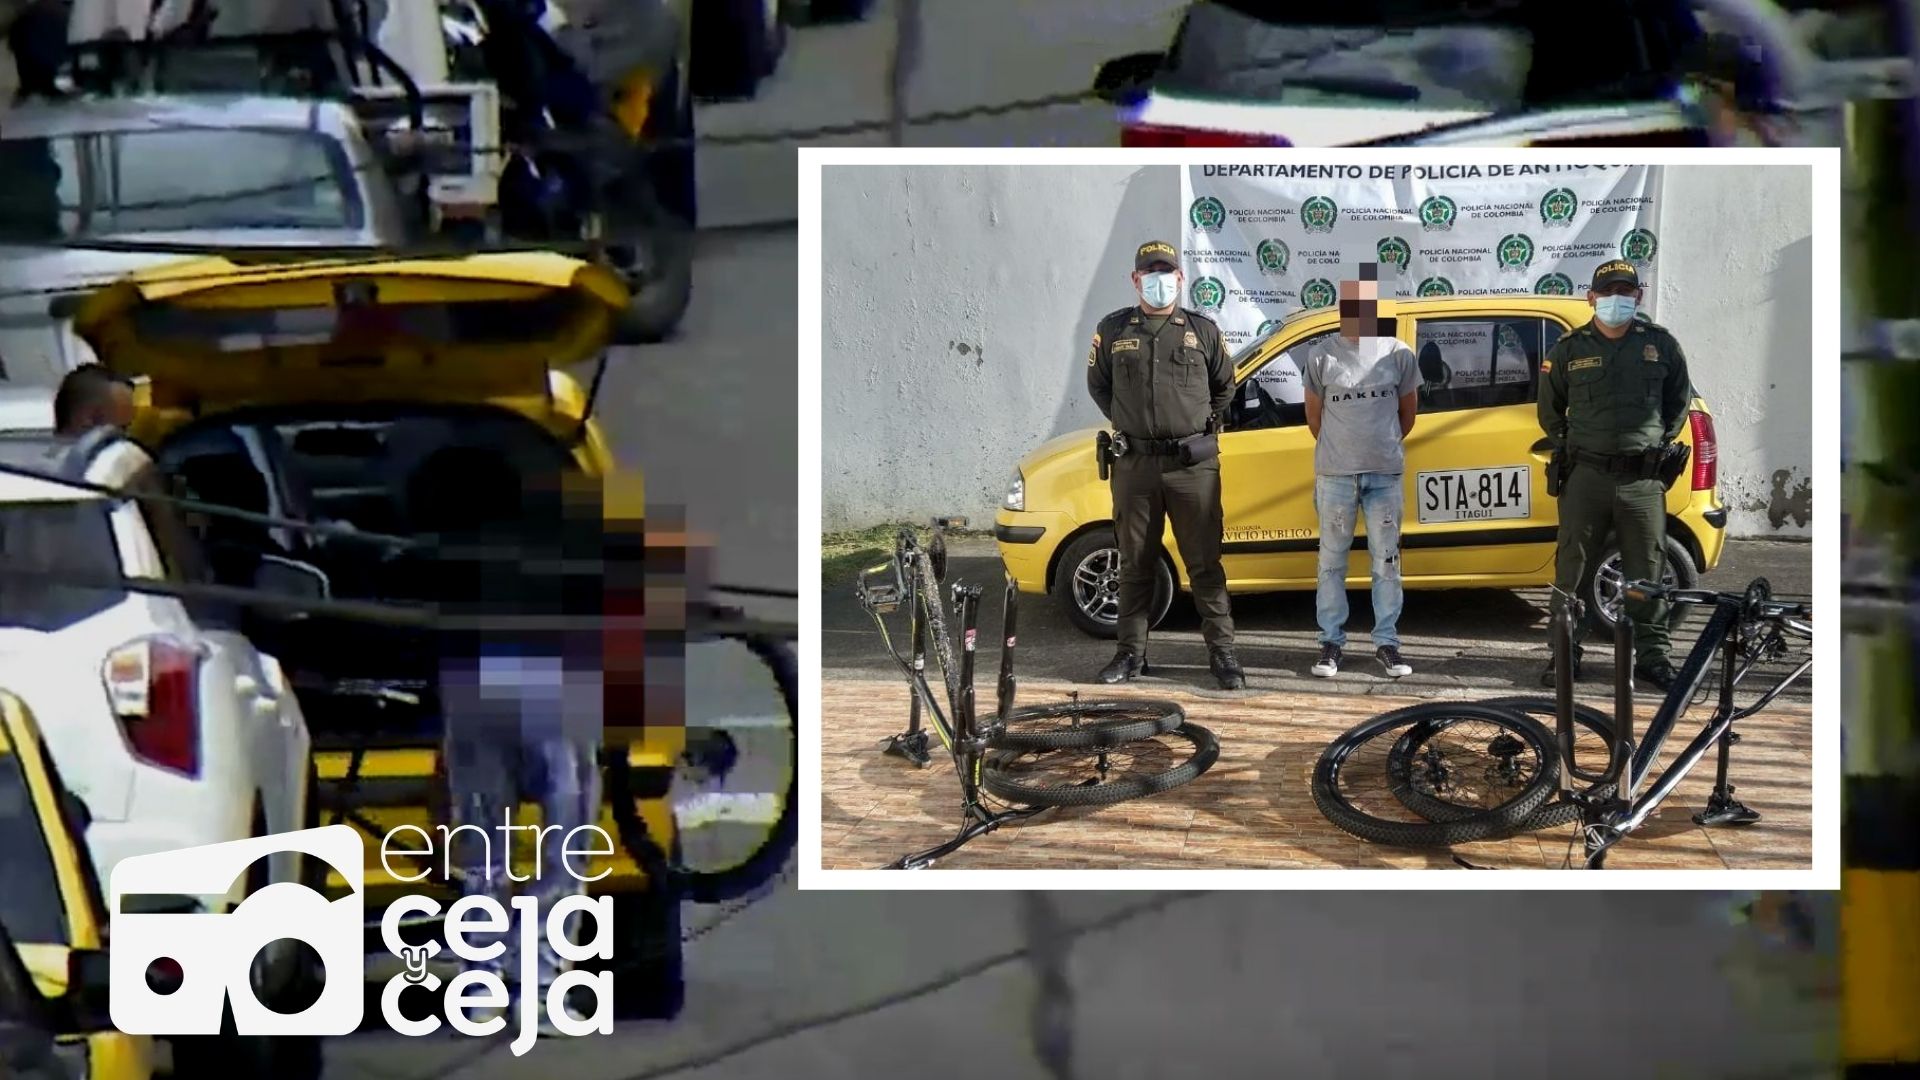 Capturaron dos hombres que venían hurtando bicicletas en La Ceja.